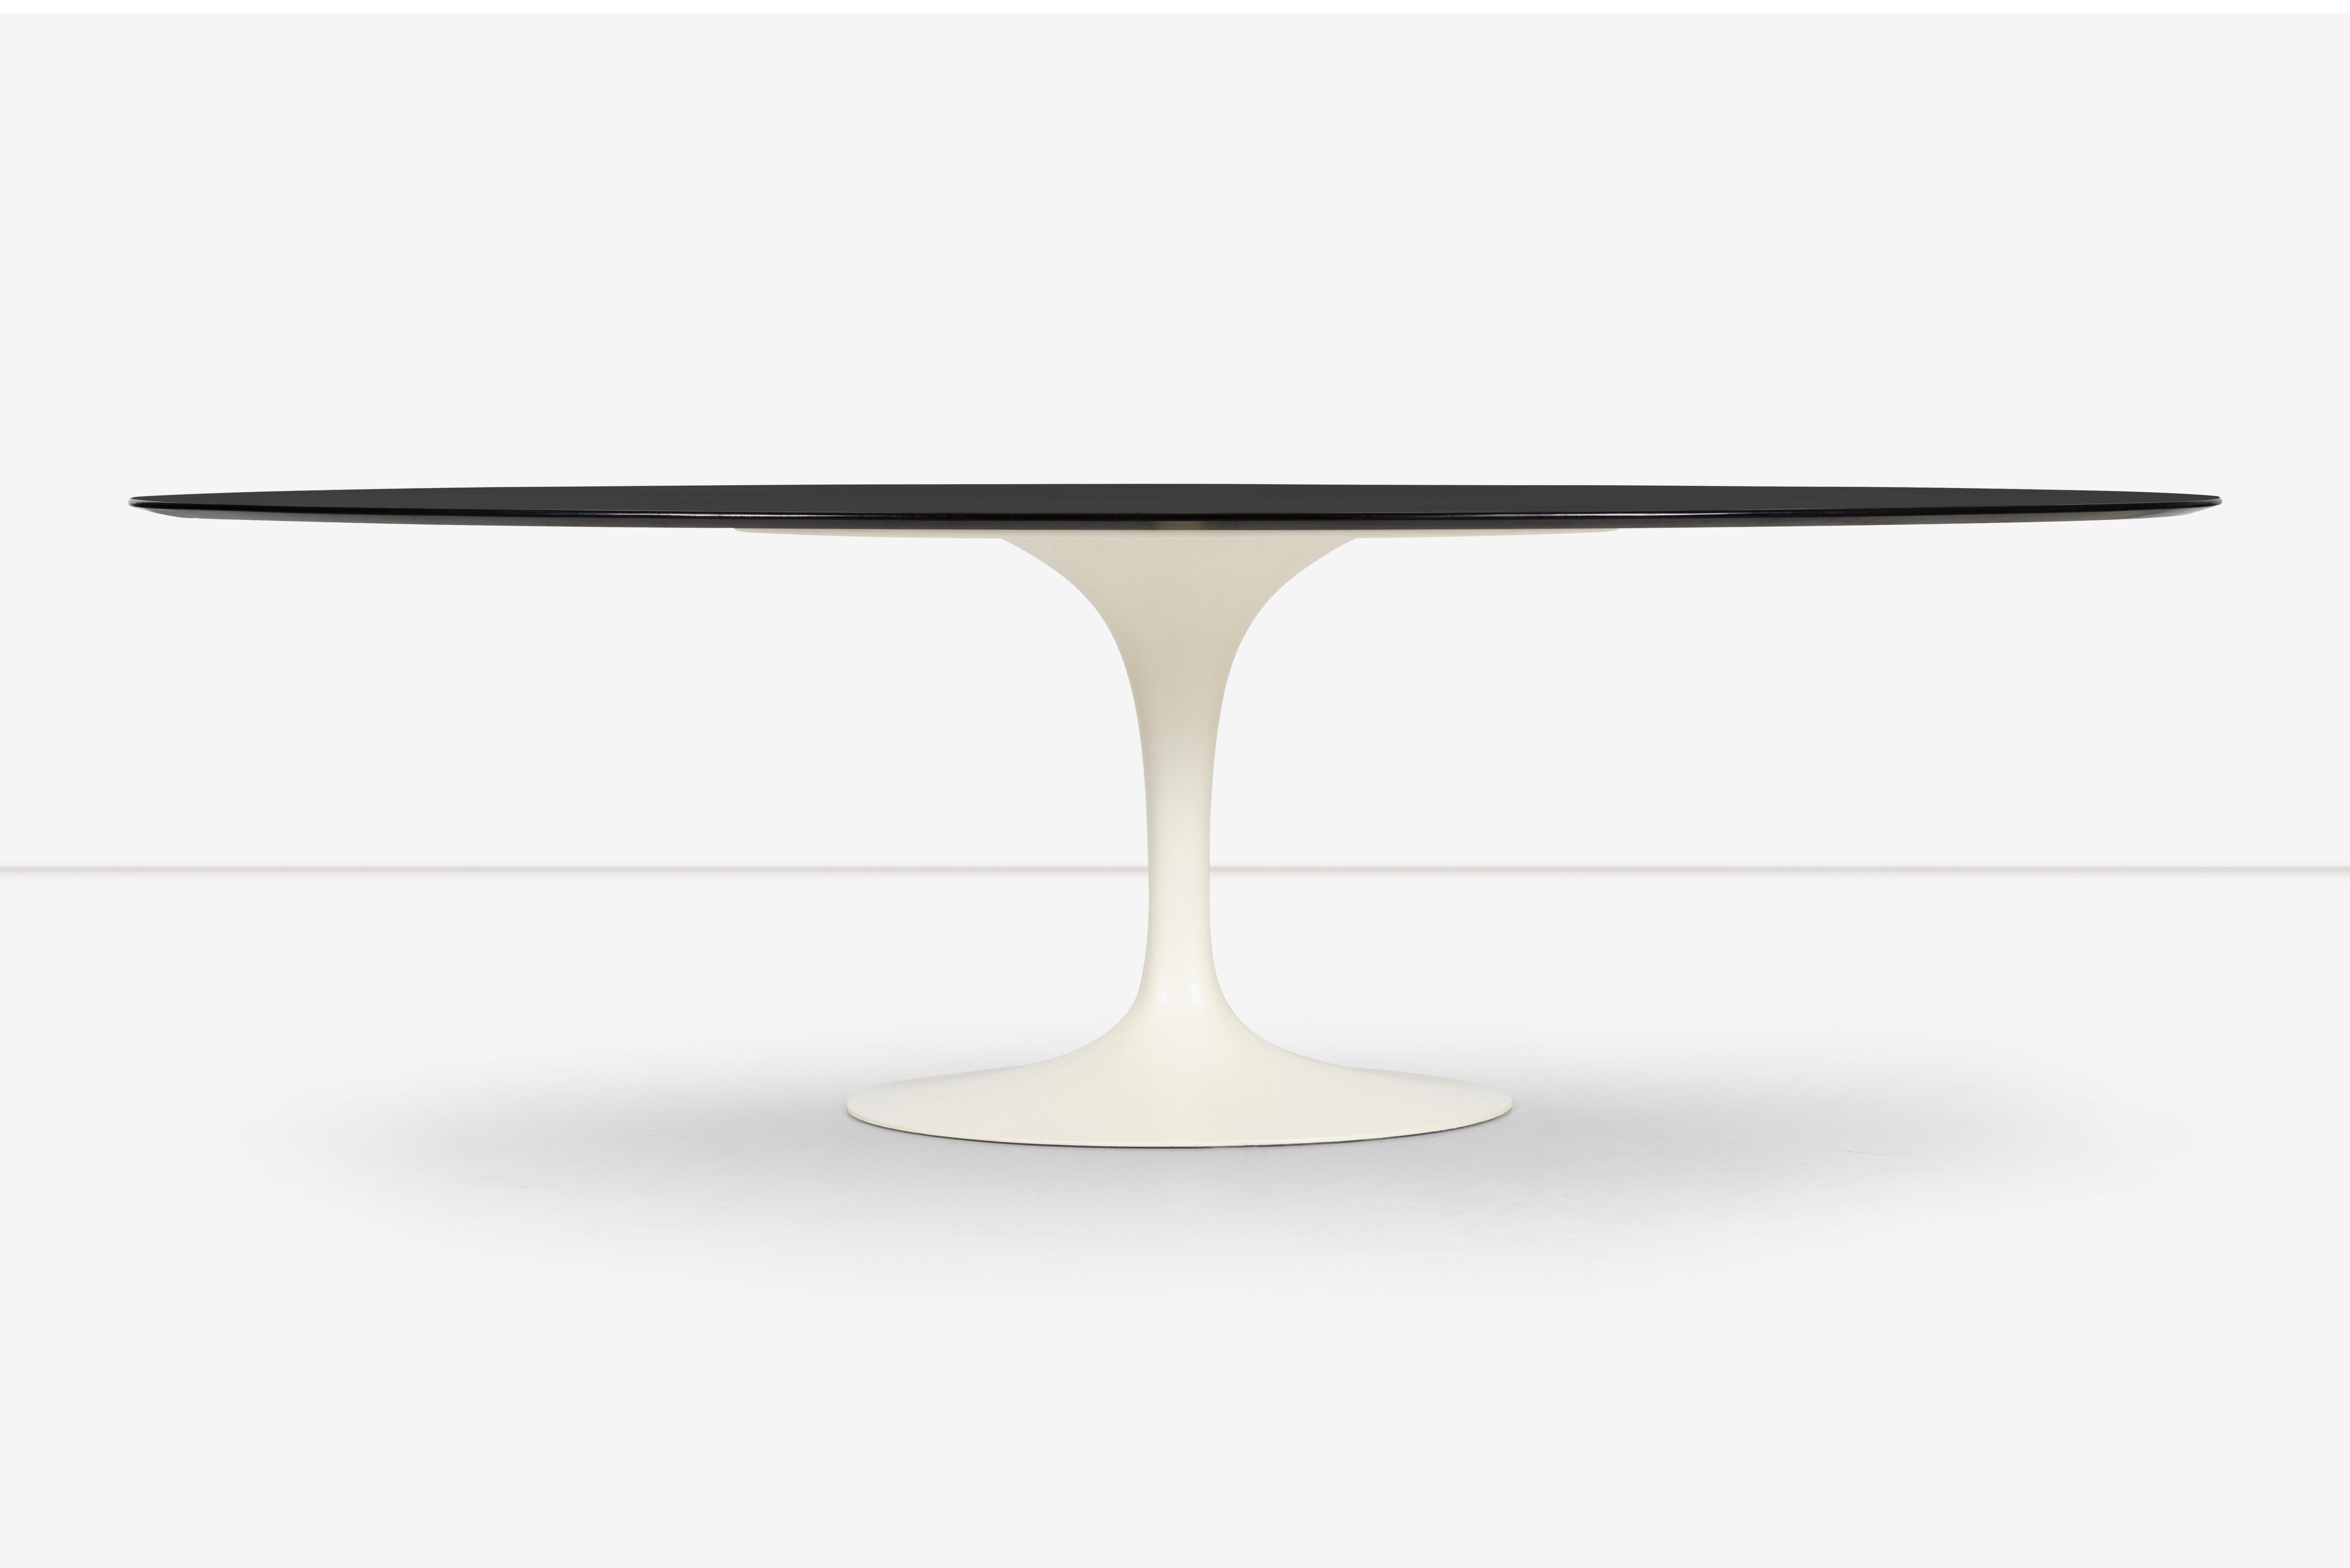 La table Tulip d'Eero Saarinen pour Knoll est un meuble classique et emblématique qui constitue un pilier du design moderne depuis sa création dans les années 1950. Le design distinctif de la table se caractérise par un élégant socle en fonte de